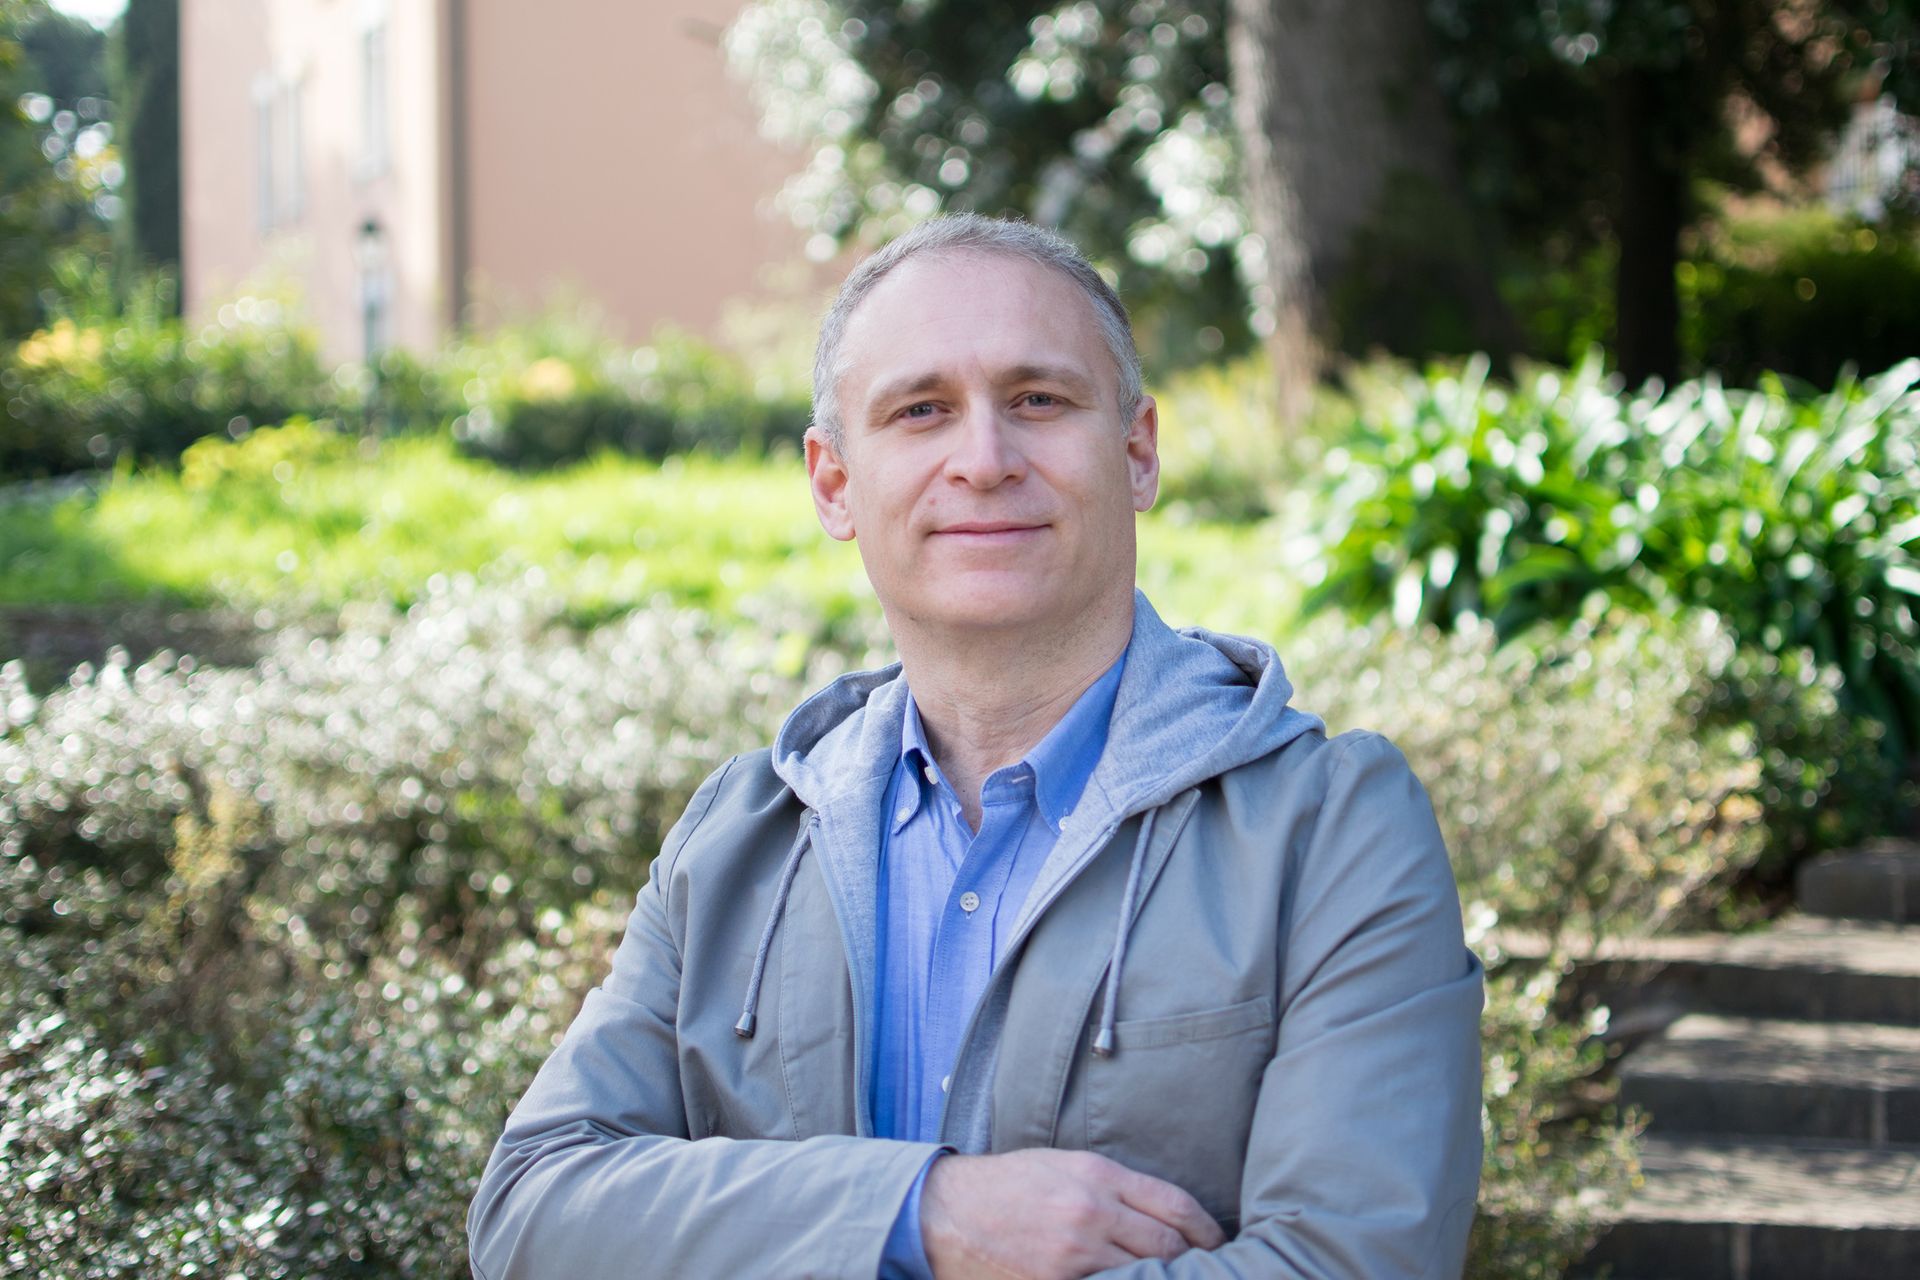 Fabio Fracas は、Transmutex での科学的コラボレーションの責任者です。